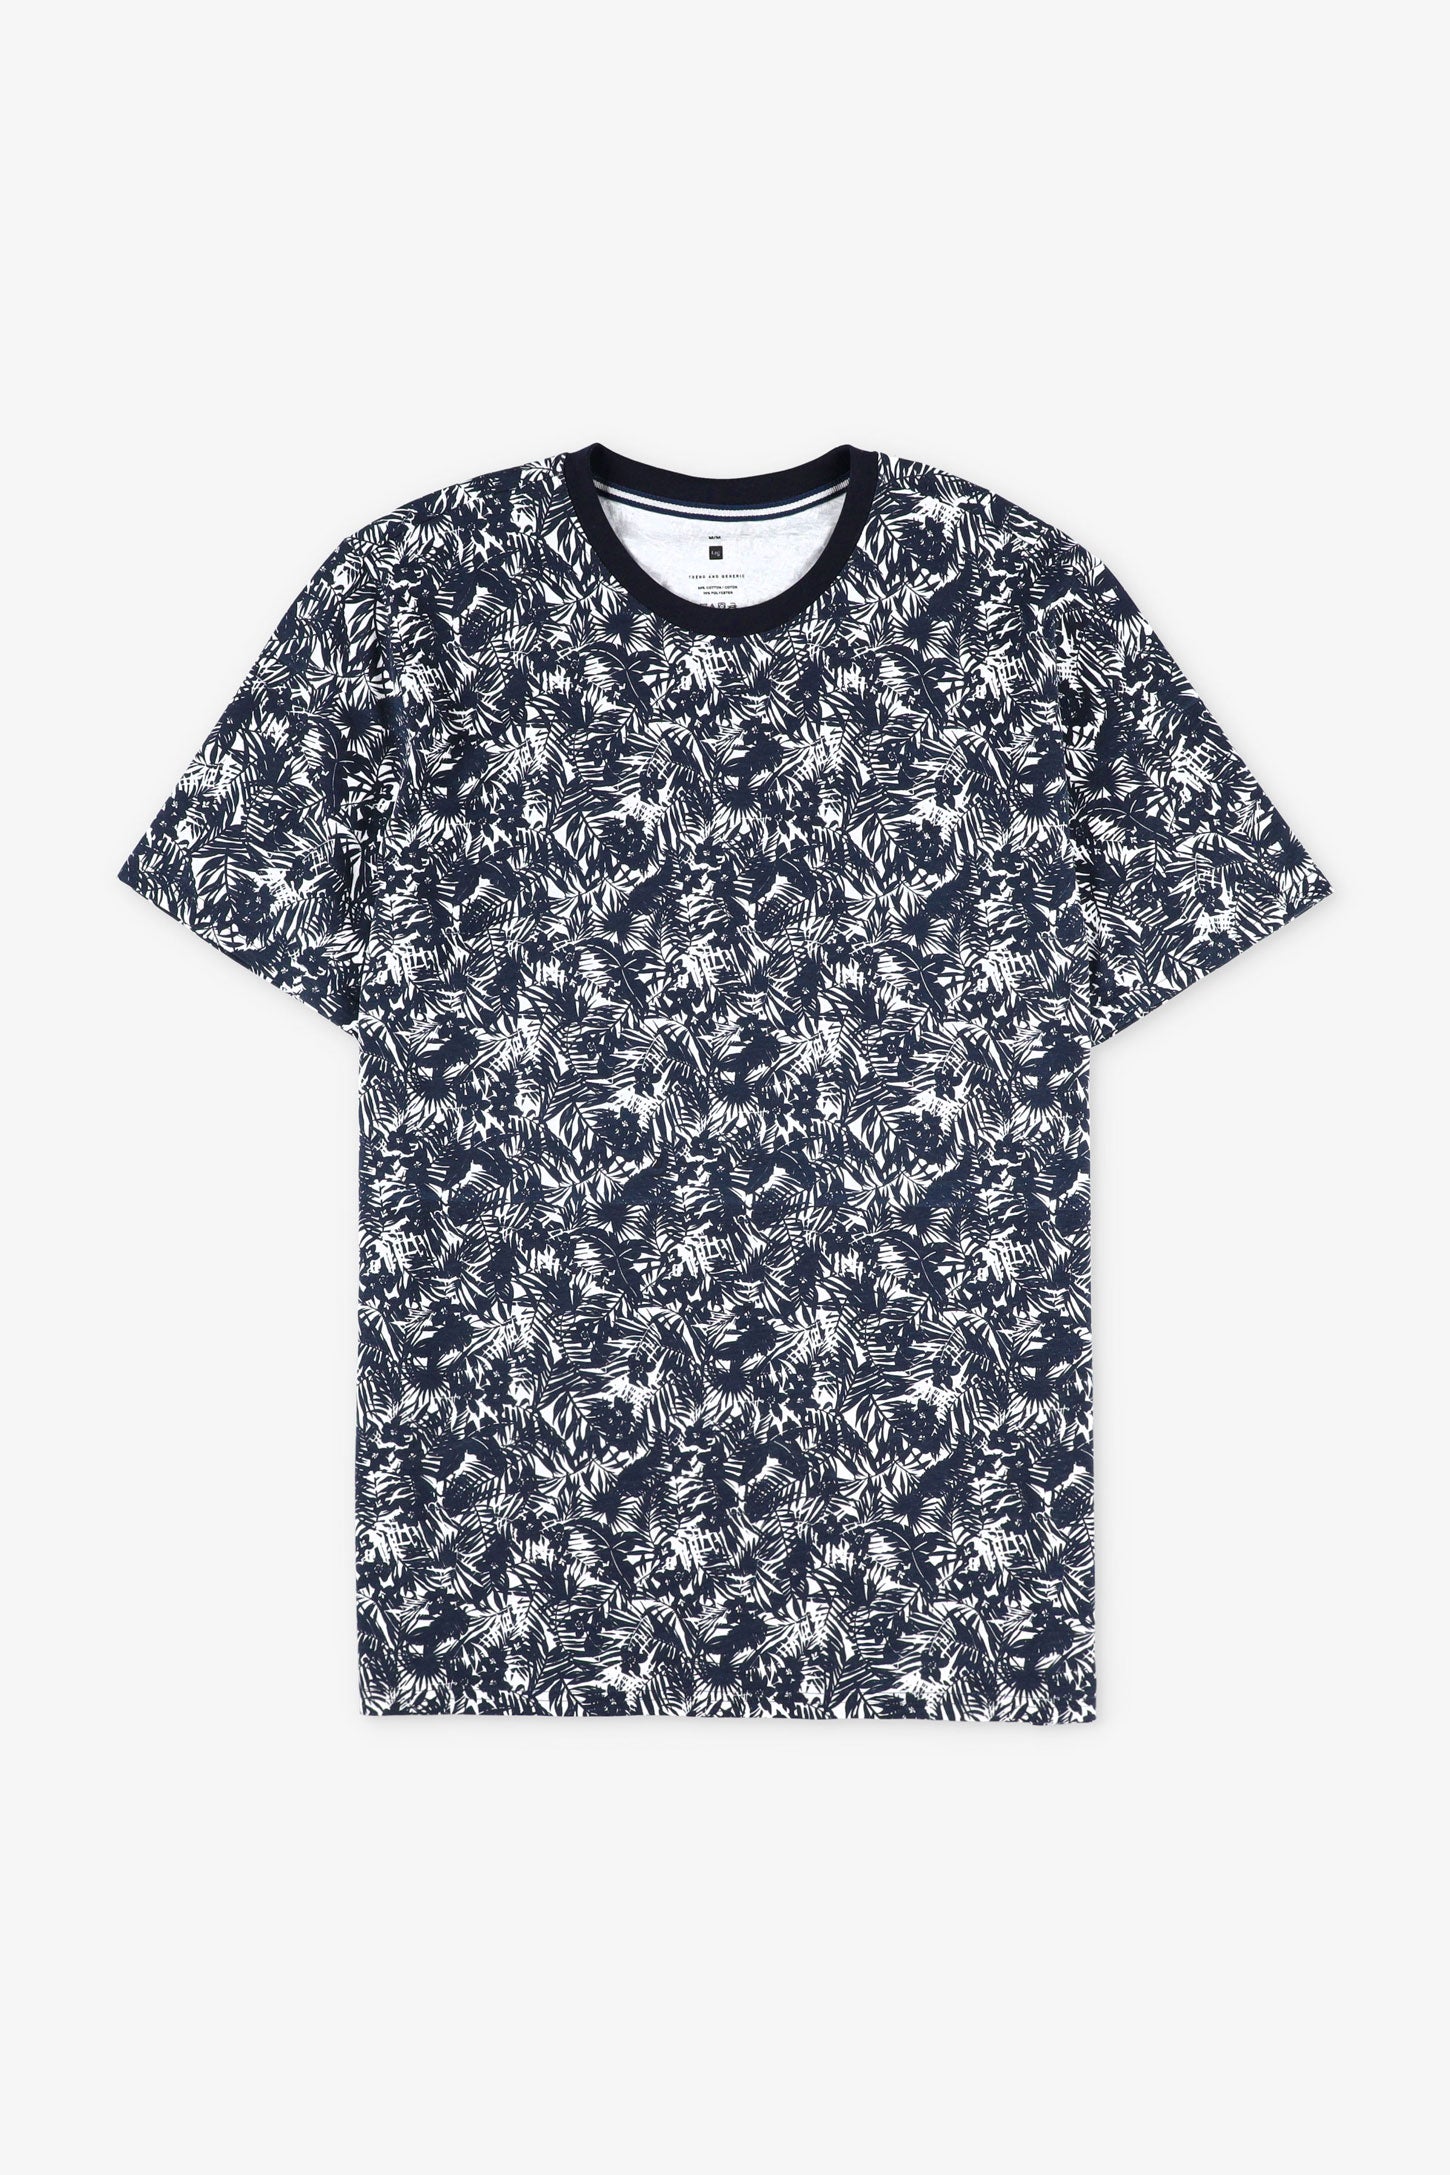 T-shirt imprimé en coton, 2/30$ - Homme && MARIN